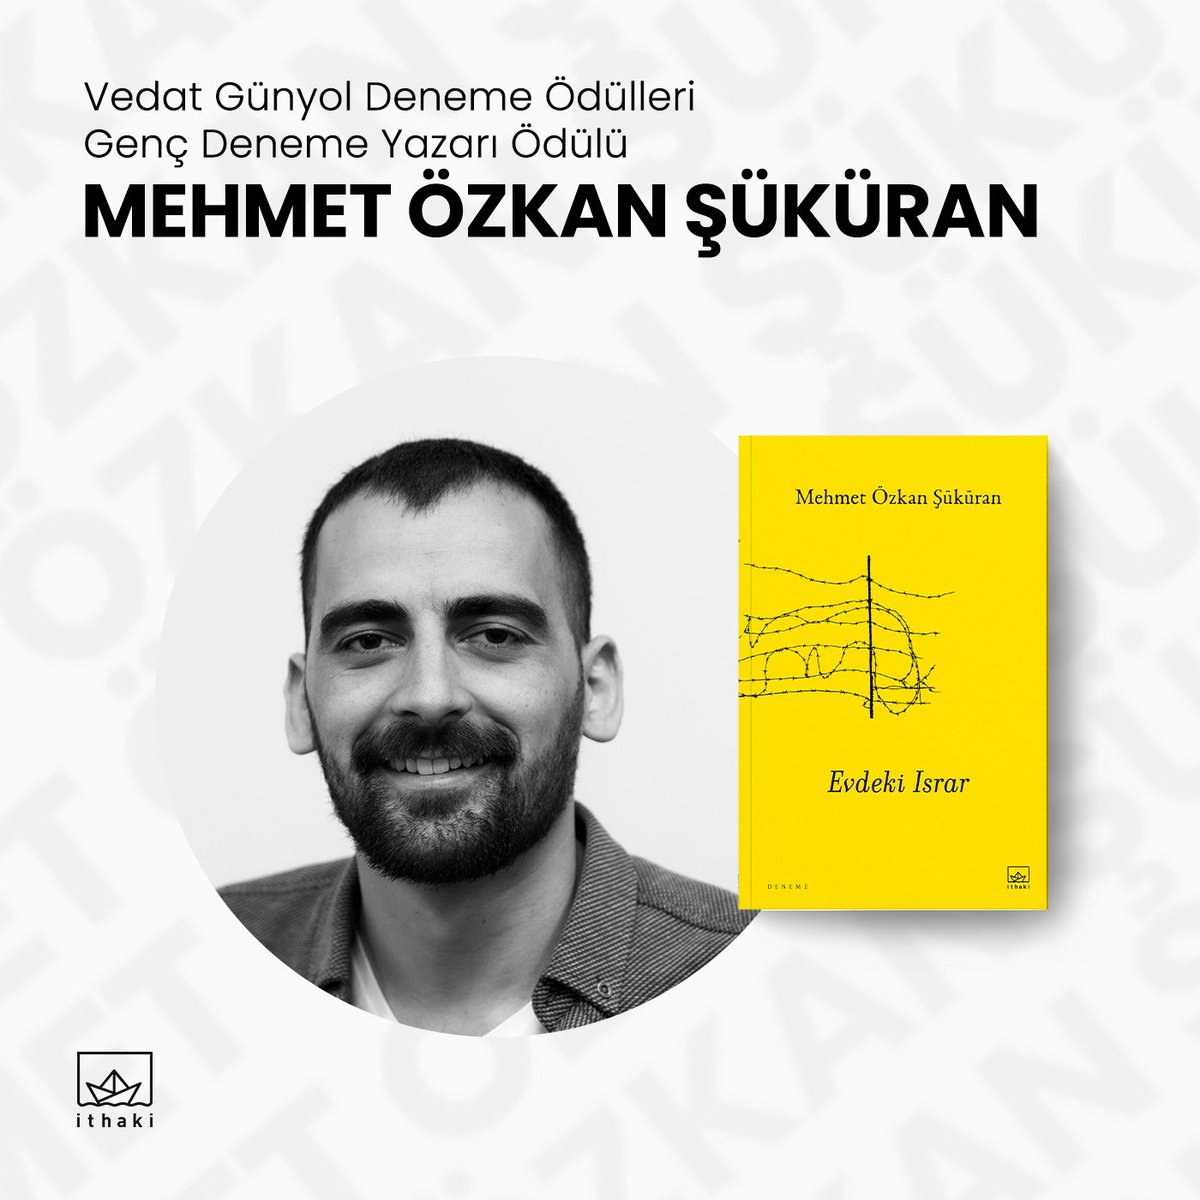 Mehmet Özkan Şüküran, Evdeki Israr adlı kitabıyla bu yıl sekizincisi düzenlenen Vedat Günyol Deneme Ödülleri’nde Genç Deneme Yazarı Ödülü’ne layık görüldü. Kıymetli yazarımızı tebrik ederiz. @mosukuran